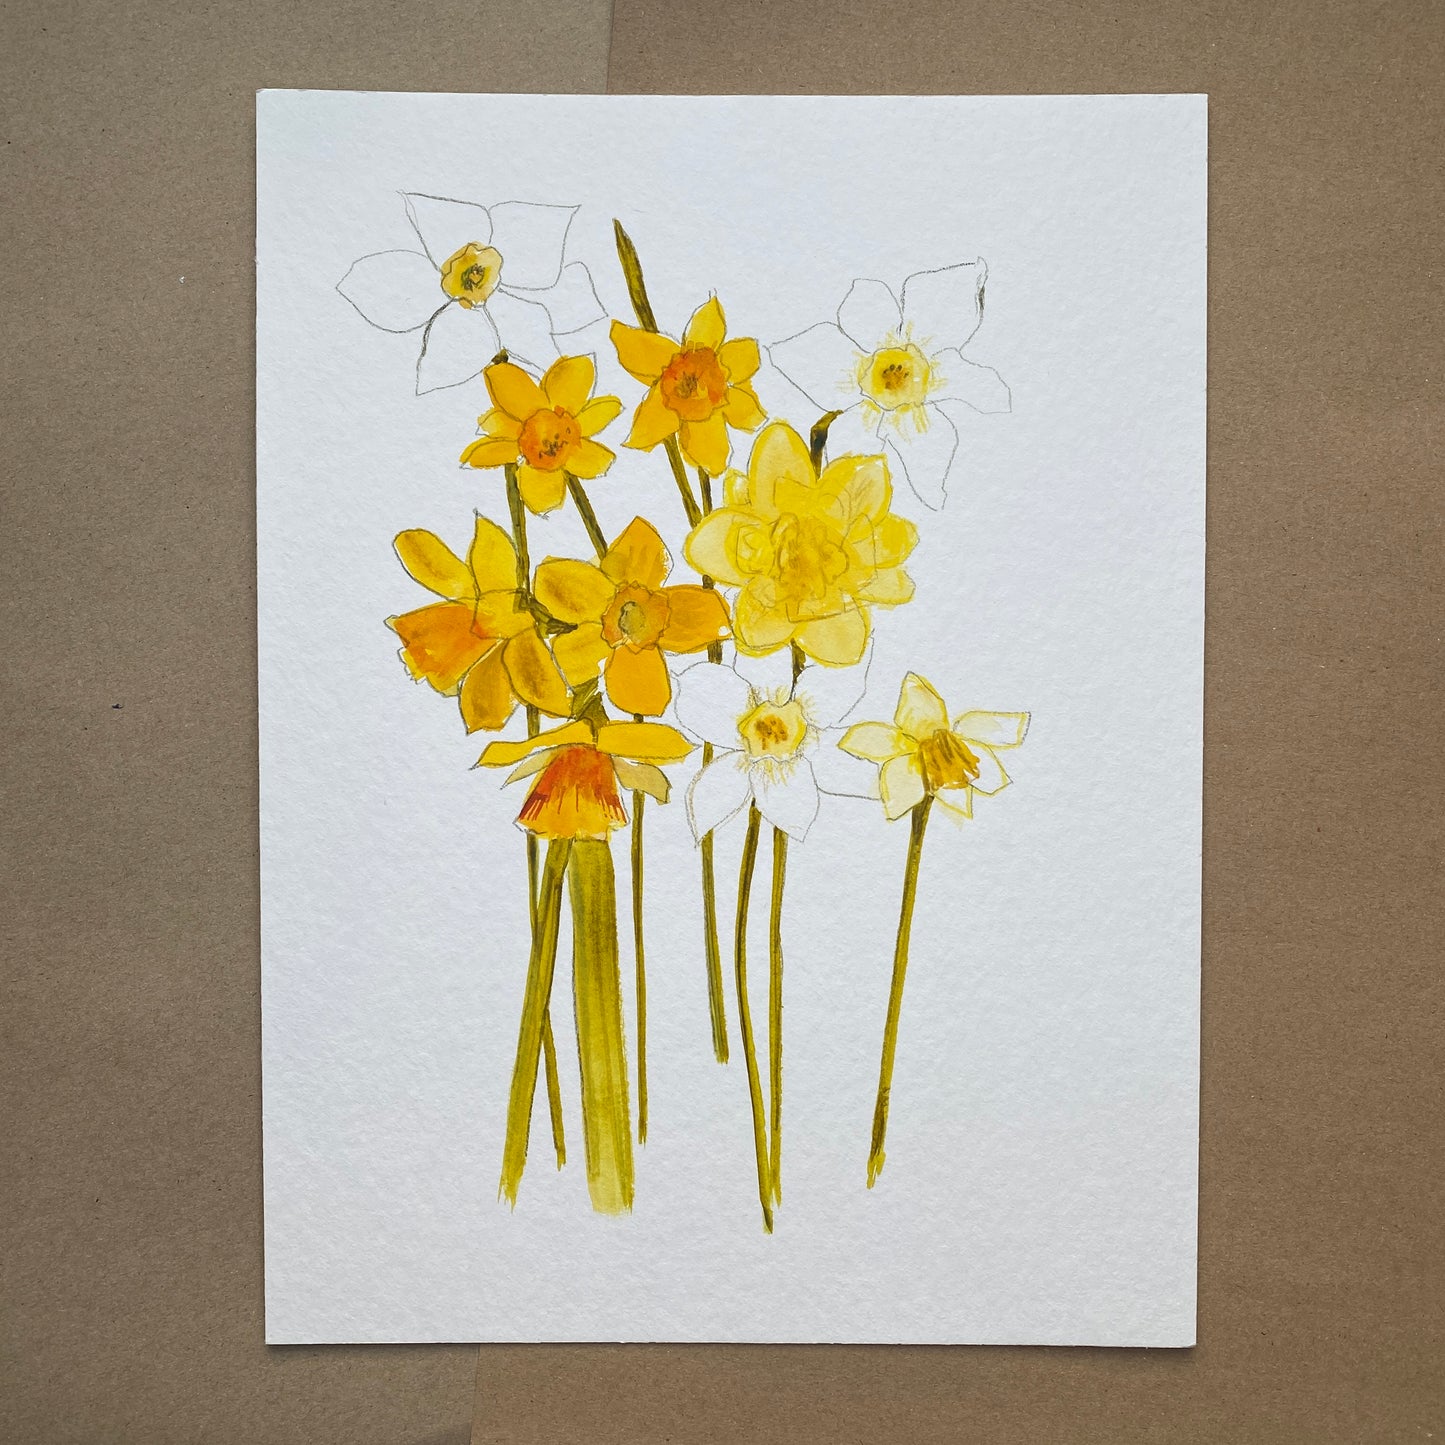 Daffodil Study 2